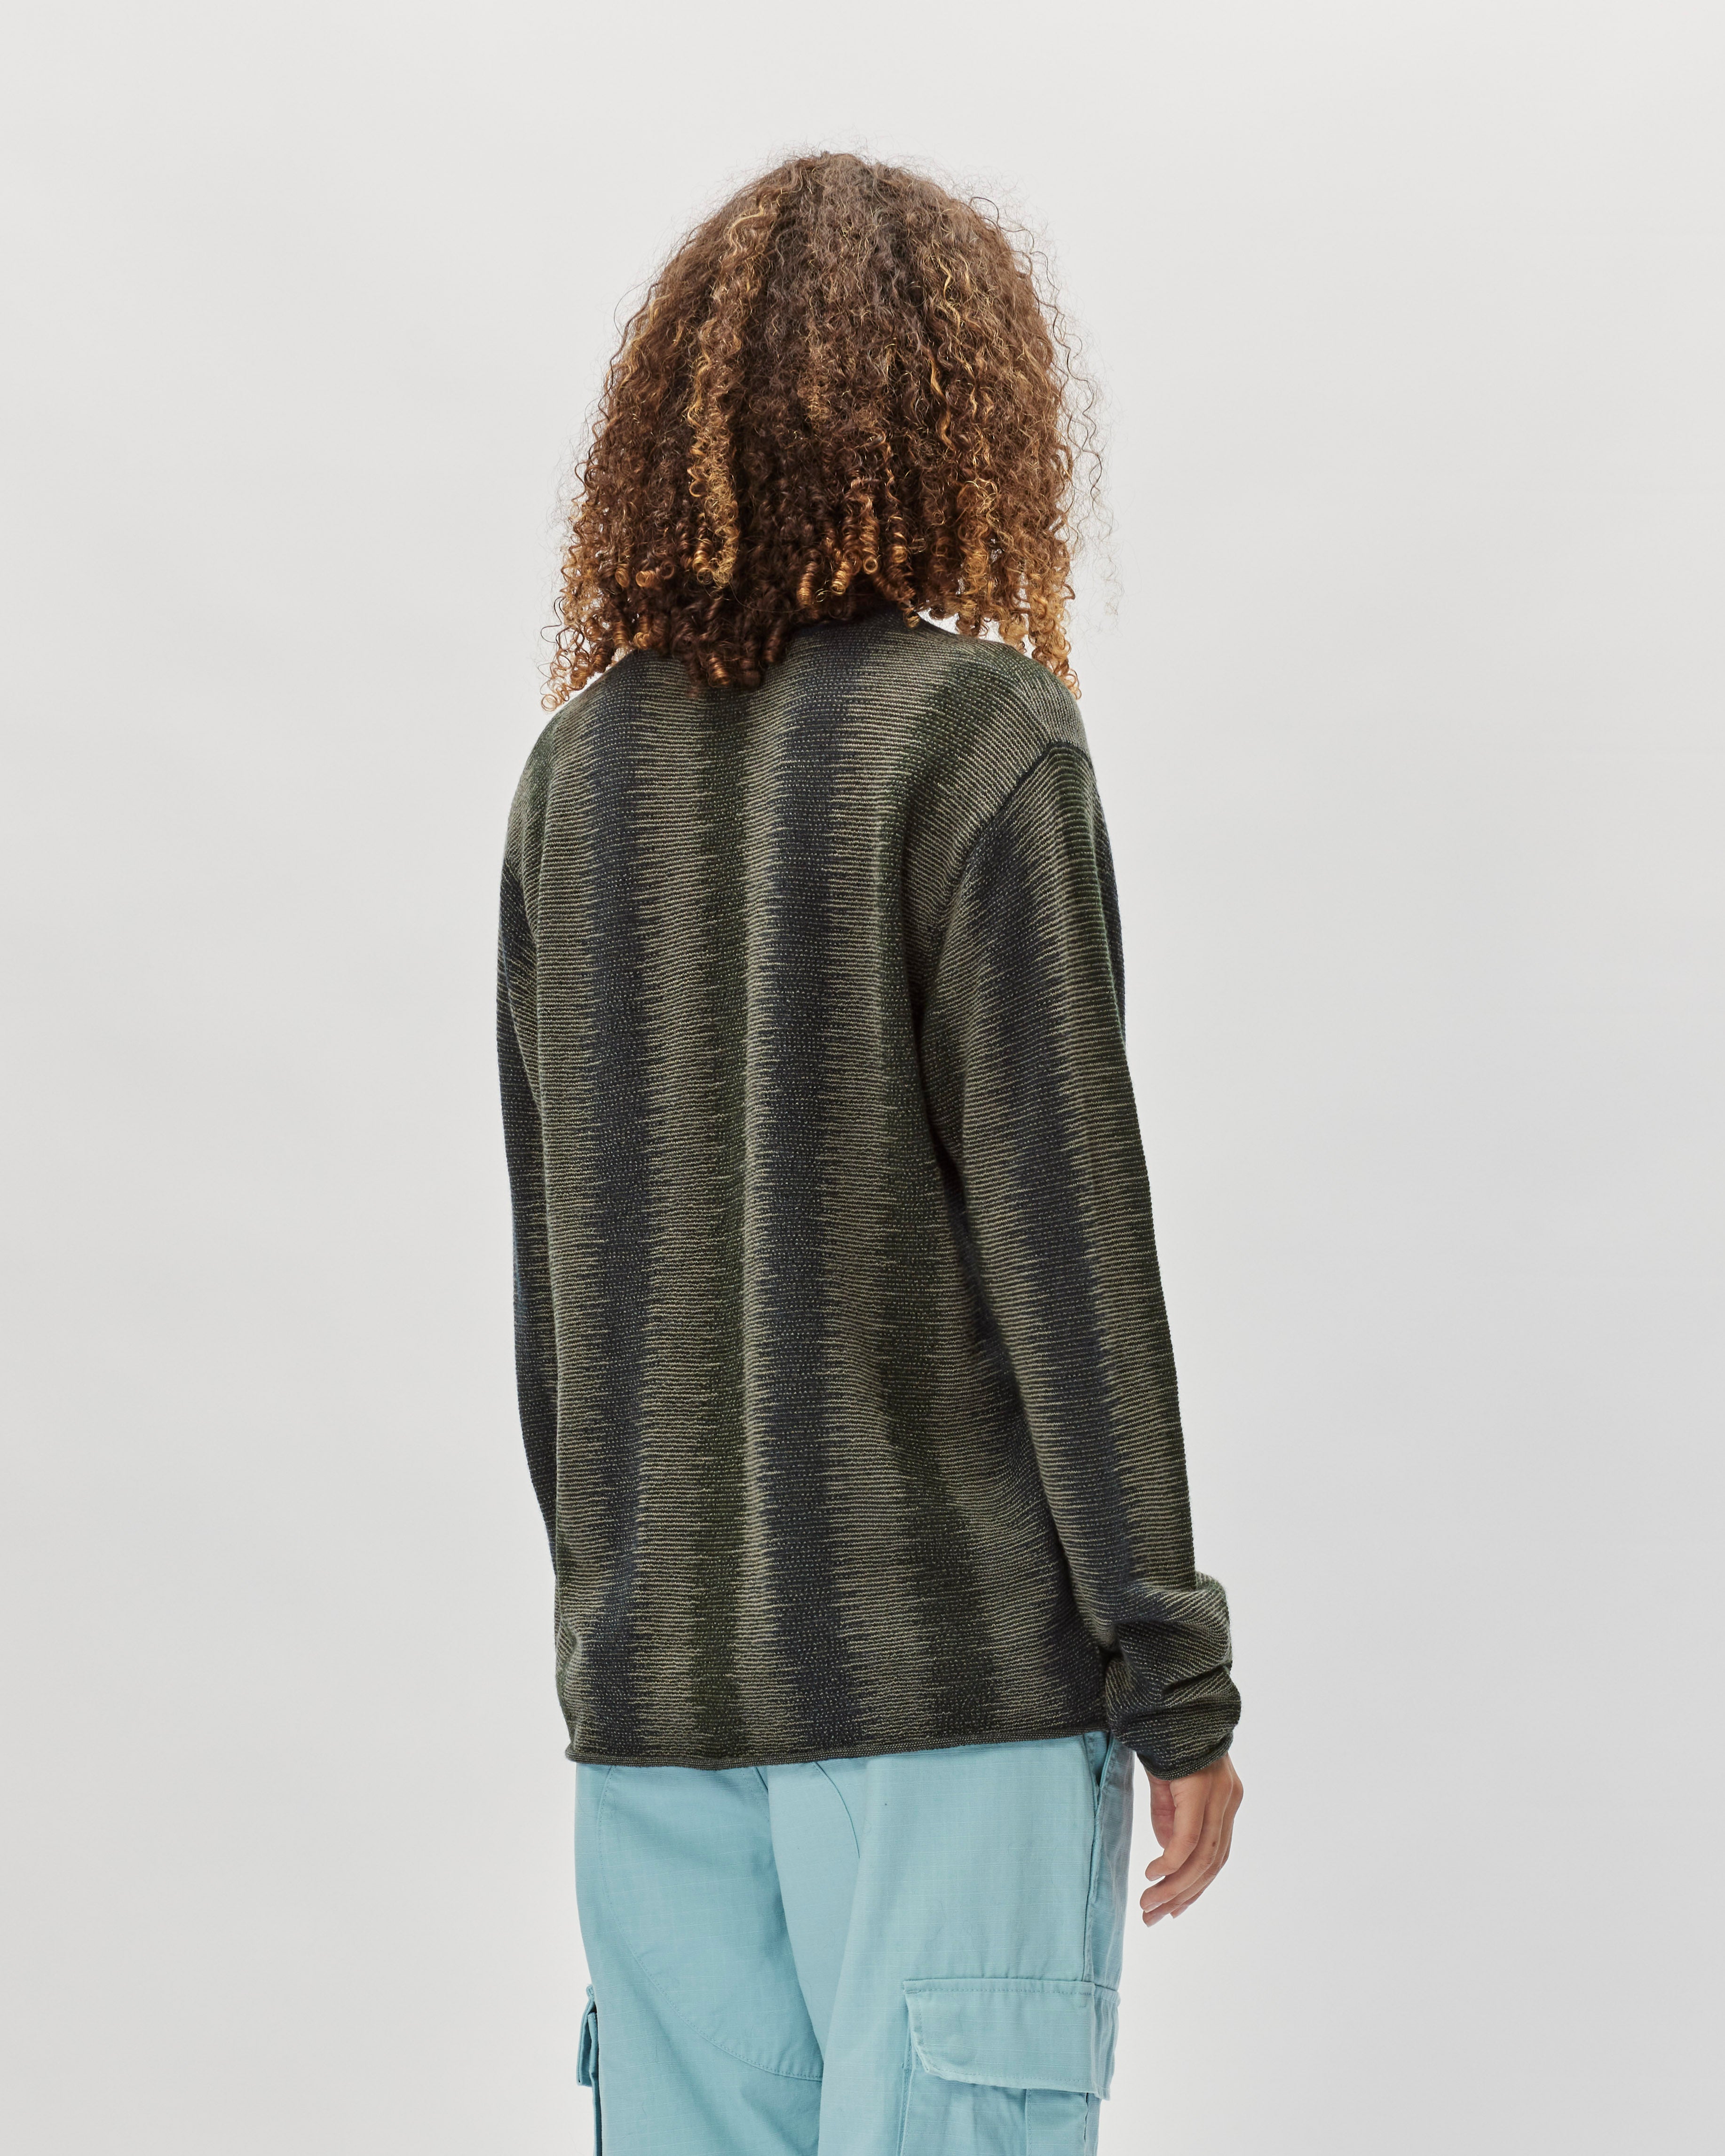 Stüssy Shadow Stripe Sweater Olive 117191-0403